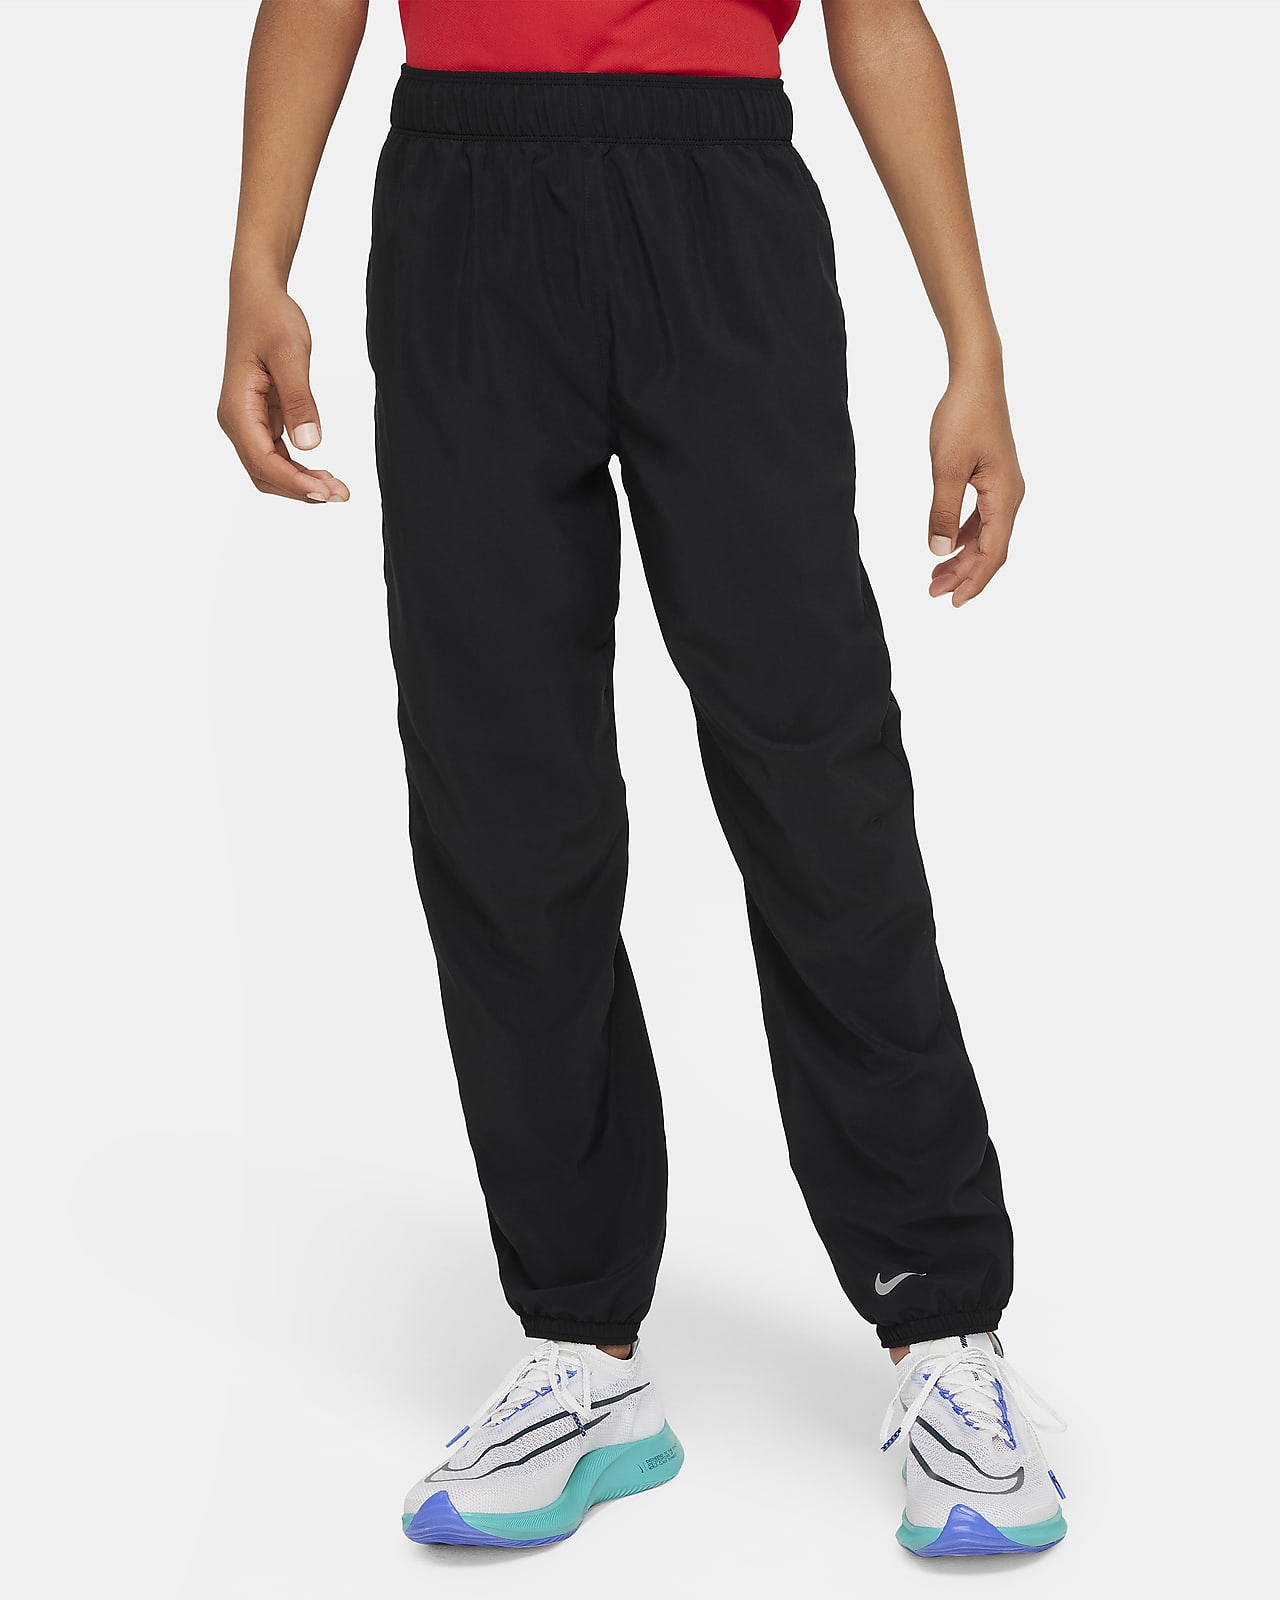 Nike Dri-FIT Multi Pantalons - Nen